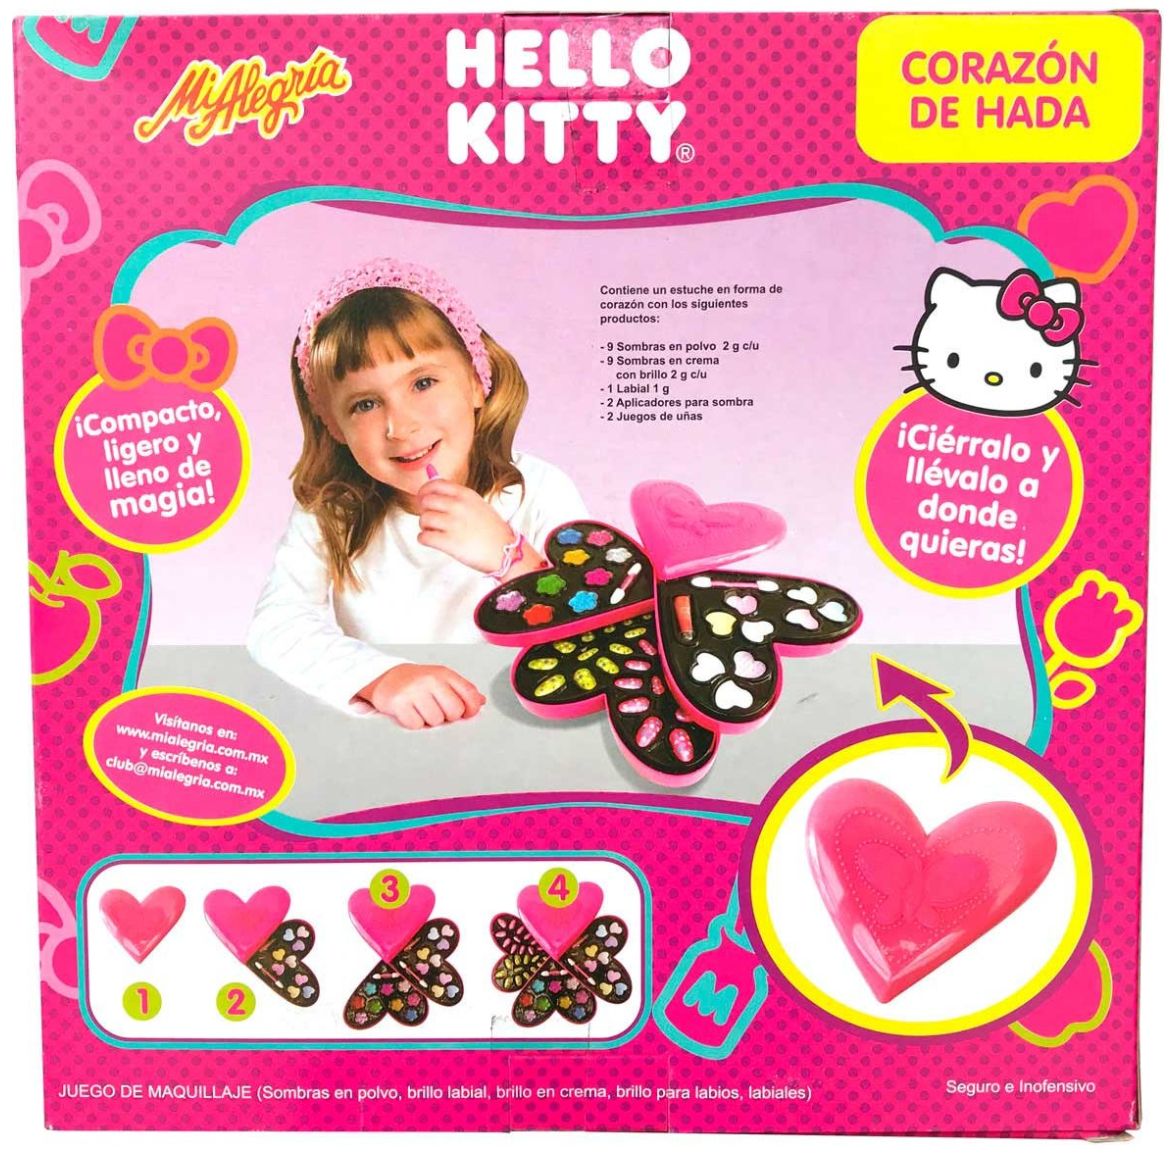 Hello Kitty Corazon de Hada Mi Alegria